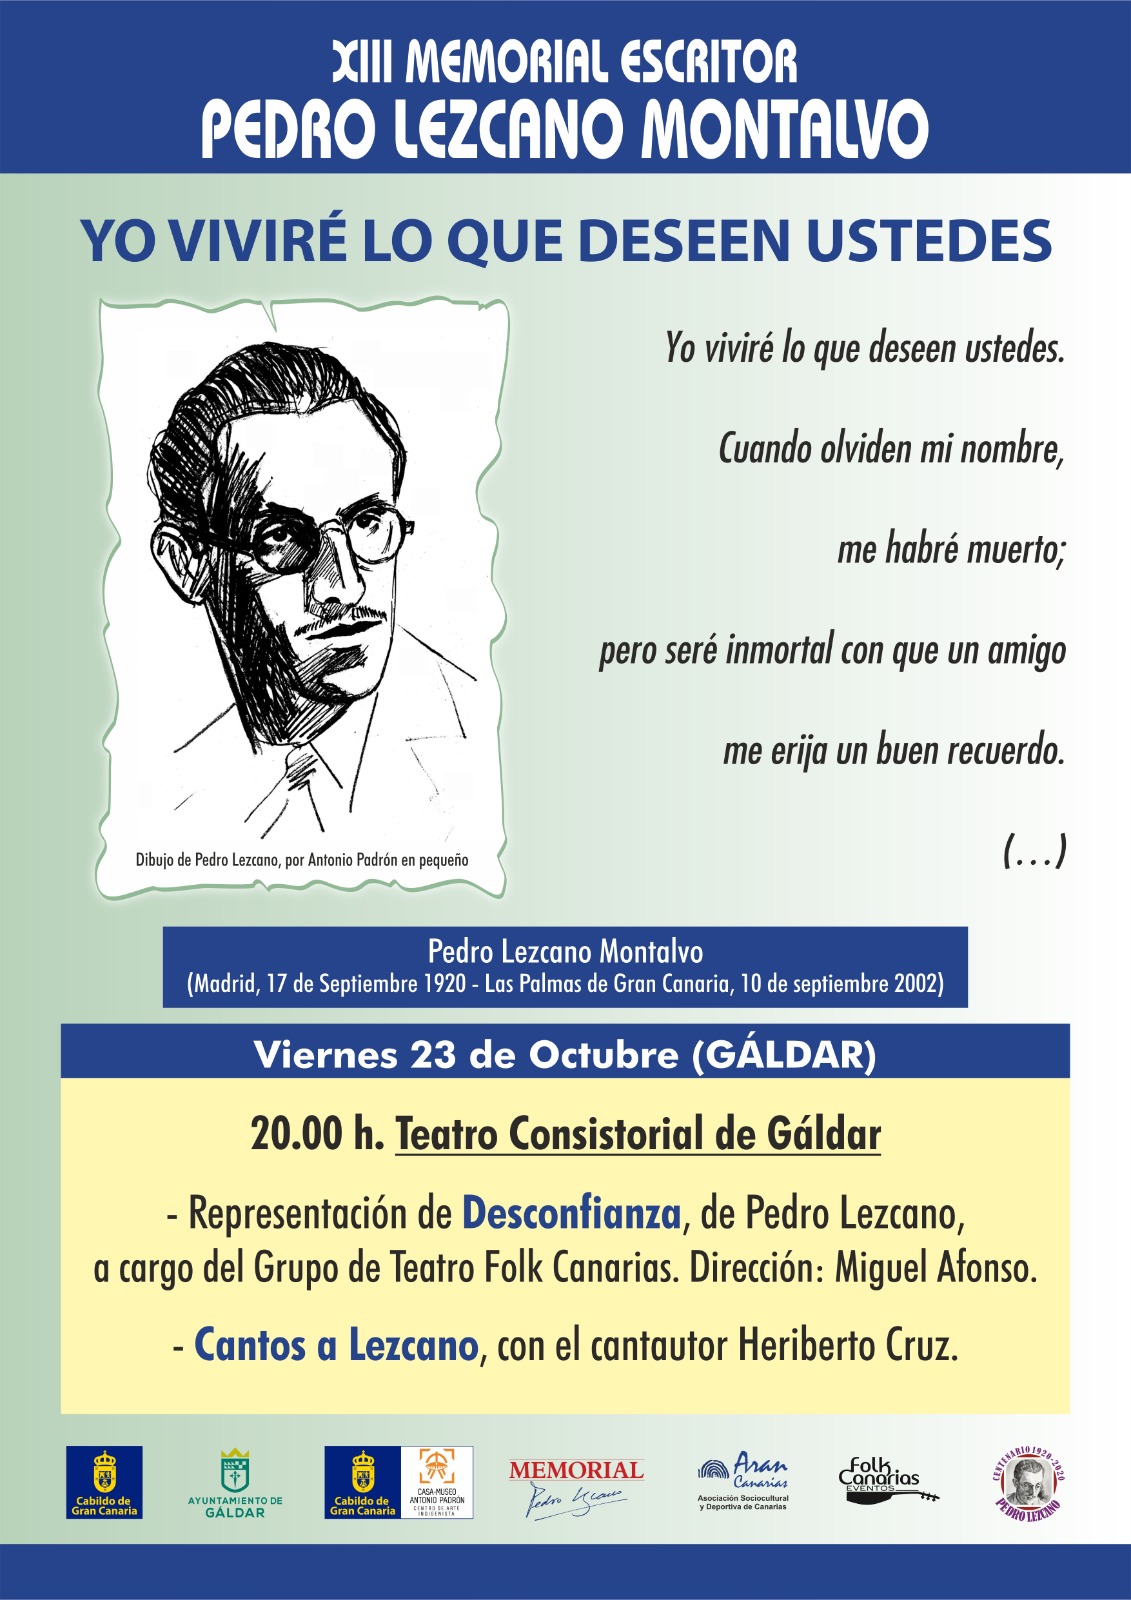 El Teatro Consistorial de Galdar acoge la obra de Teatro Desconfianza del escritor Pedro Lezcano